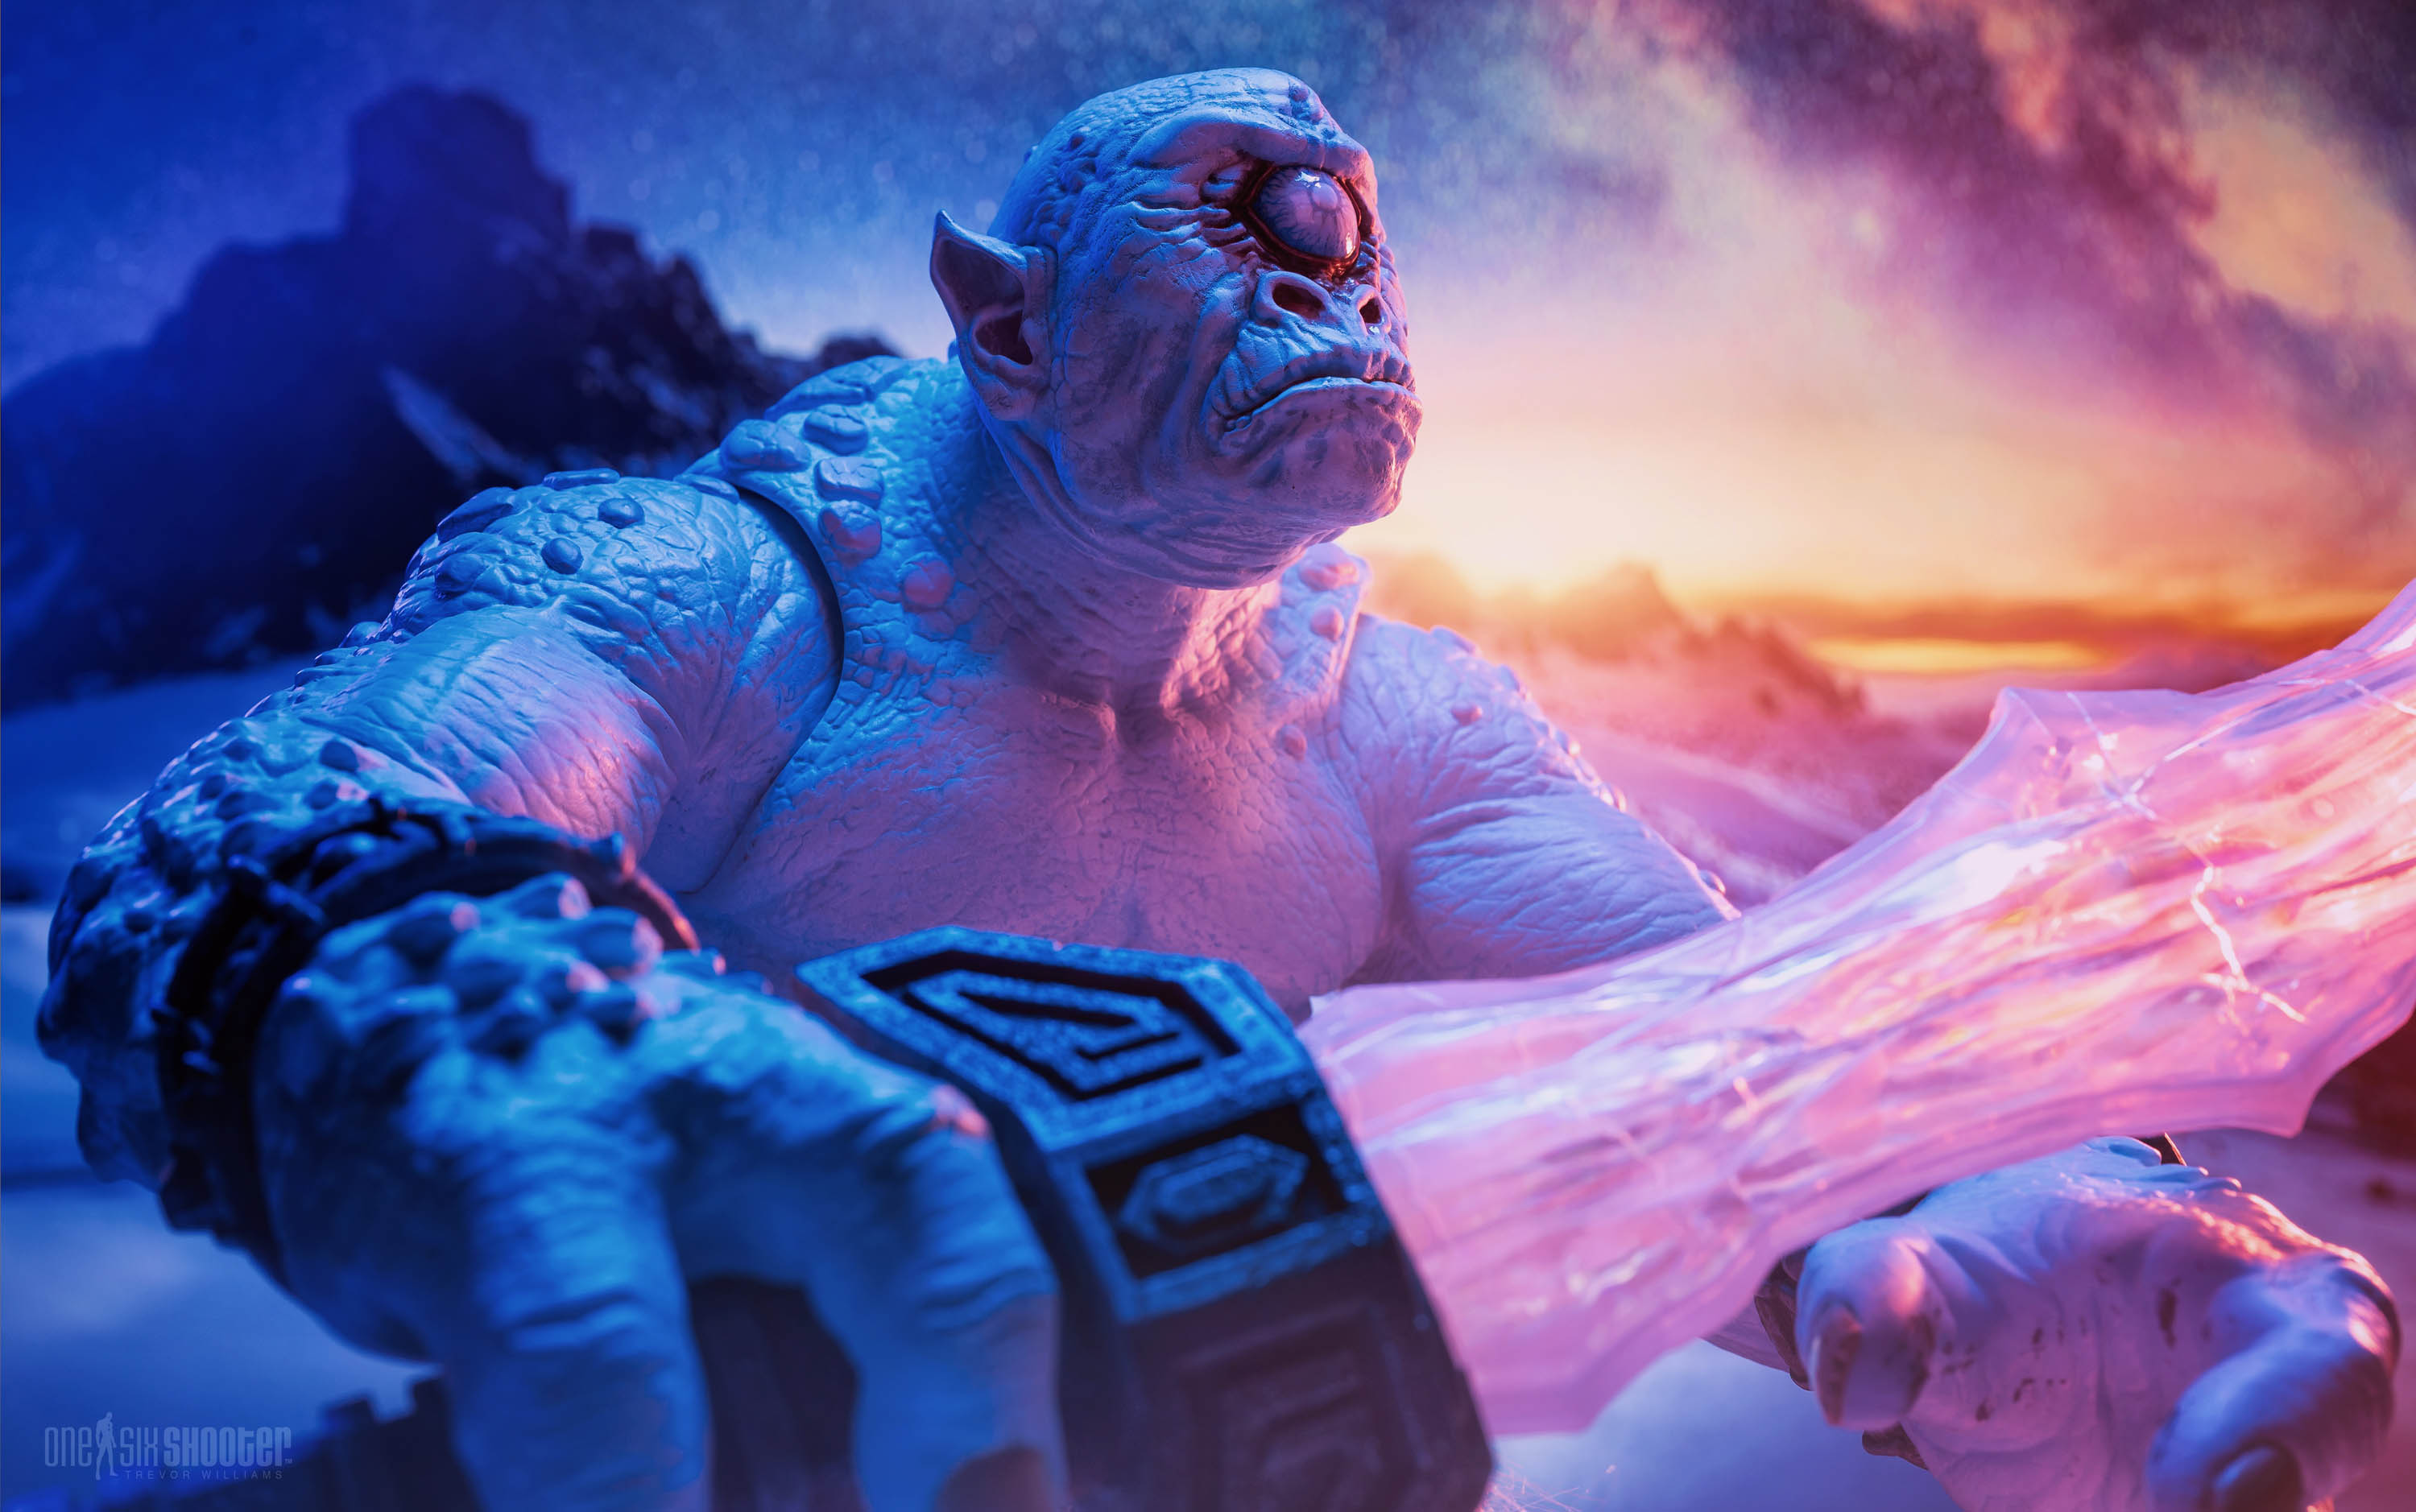 Mythic Legions Ice Troll 2